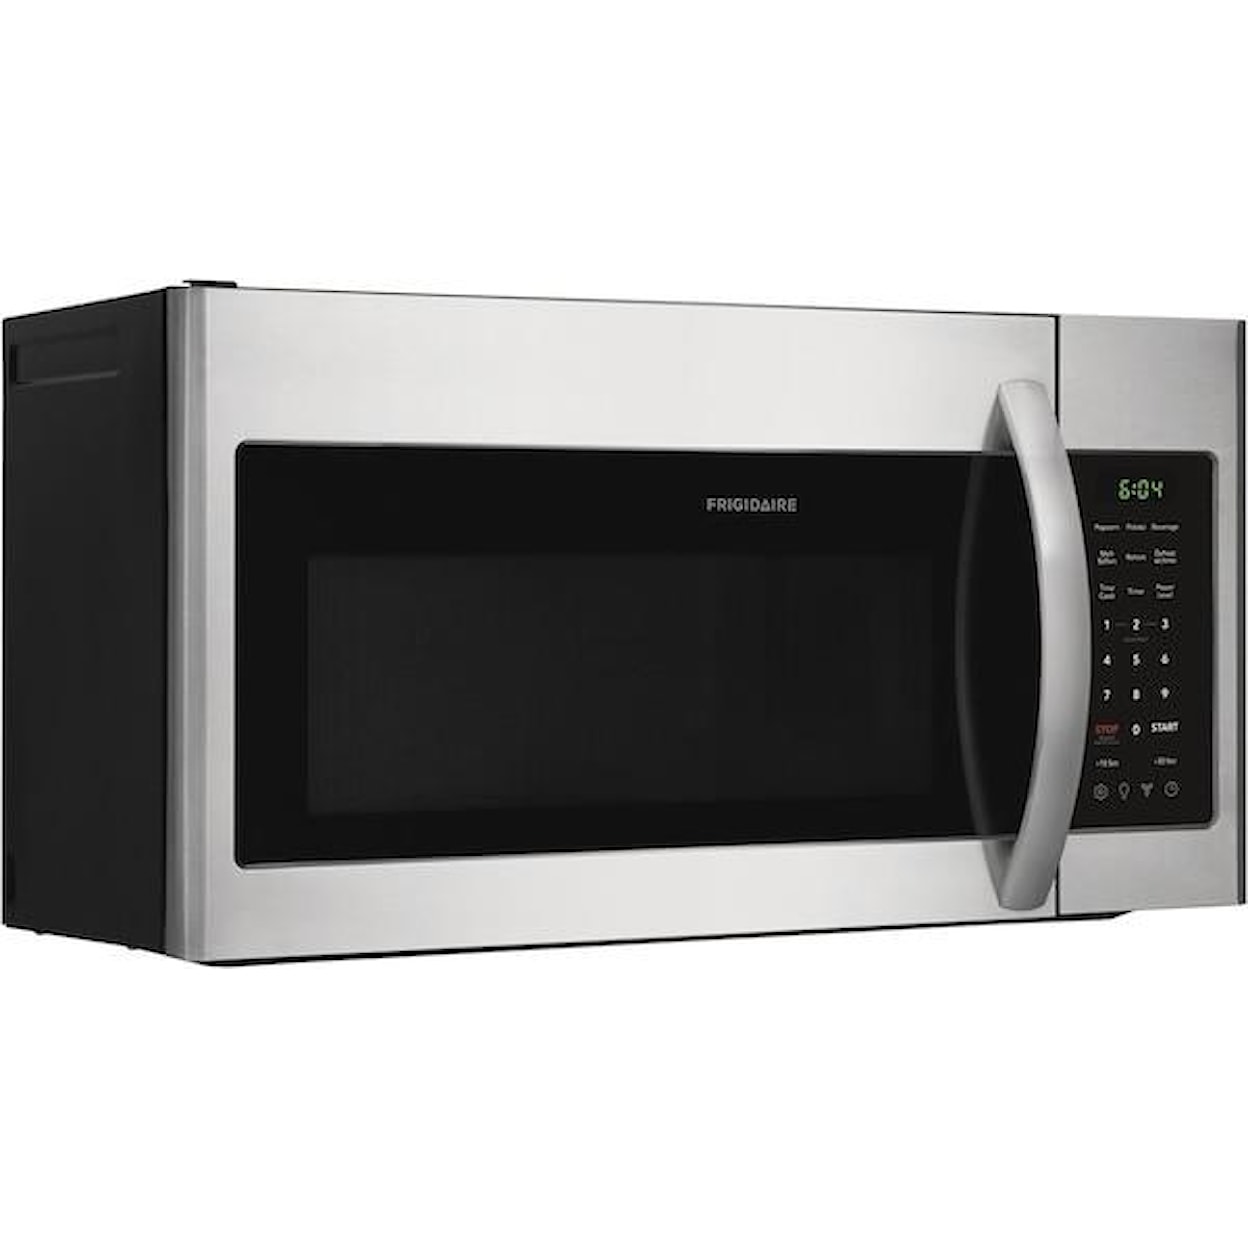 Frigidaire Microwaves 1.8 Microwave